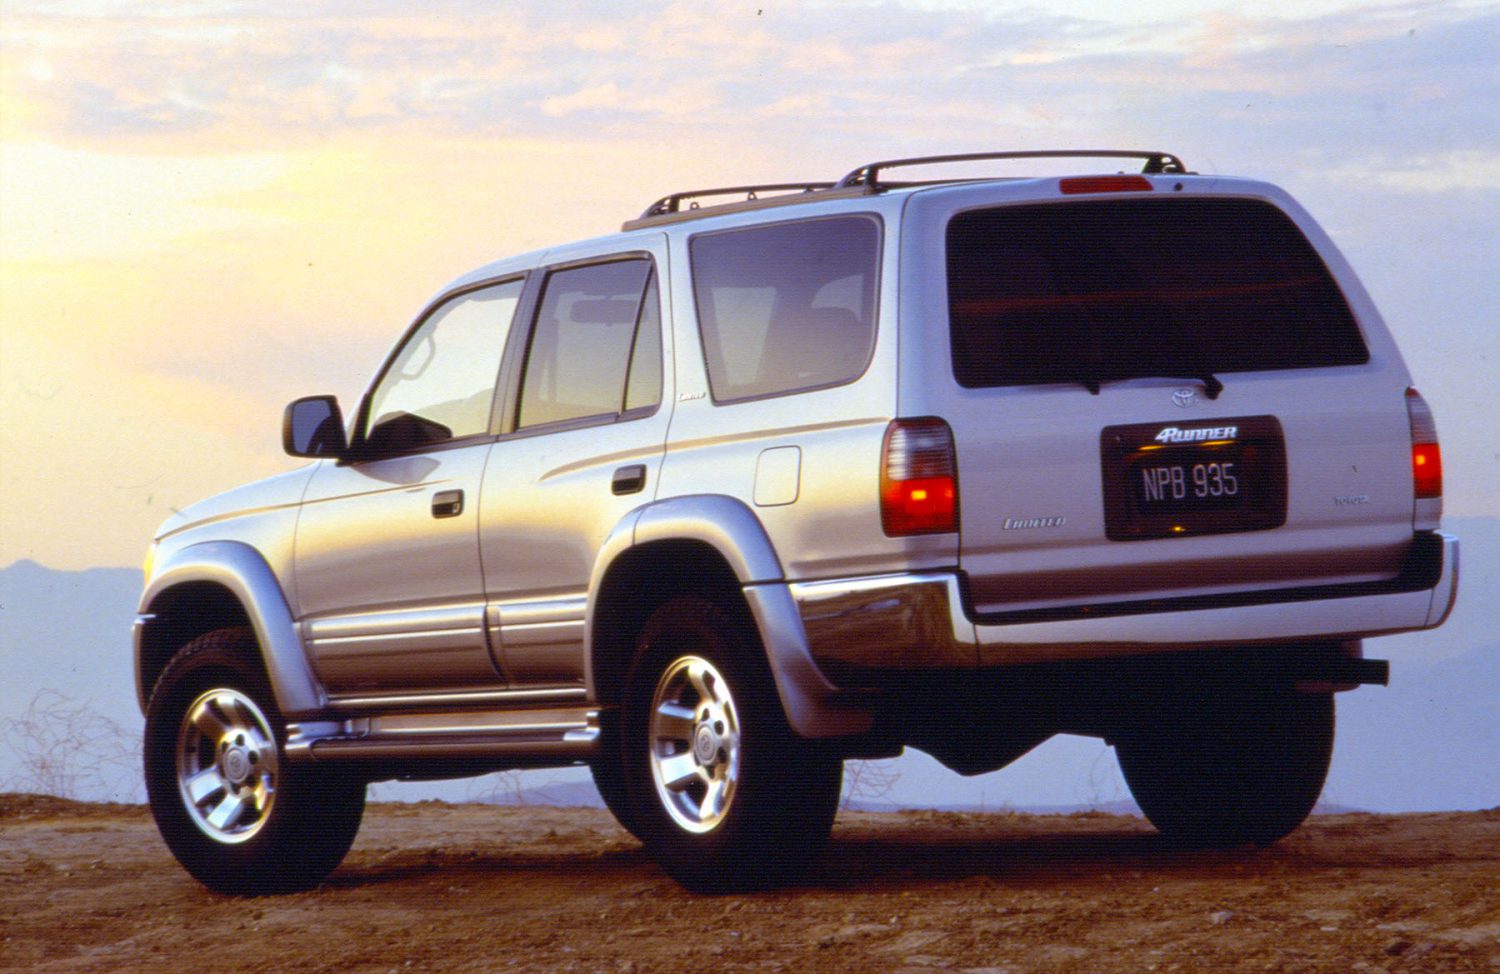 1996 - 2002 Toyota 4Runner [Third (3rd) Generation] - Toyota USA Newsroom